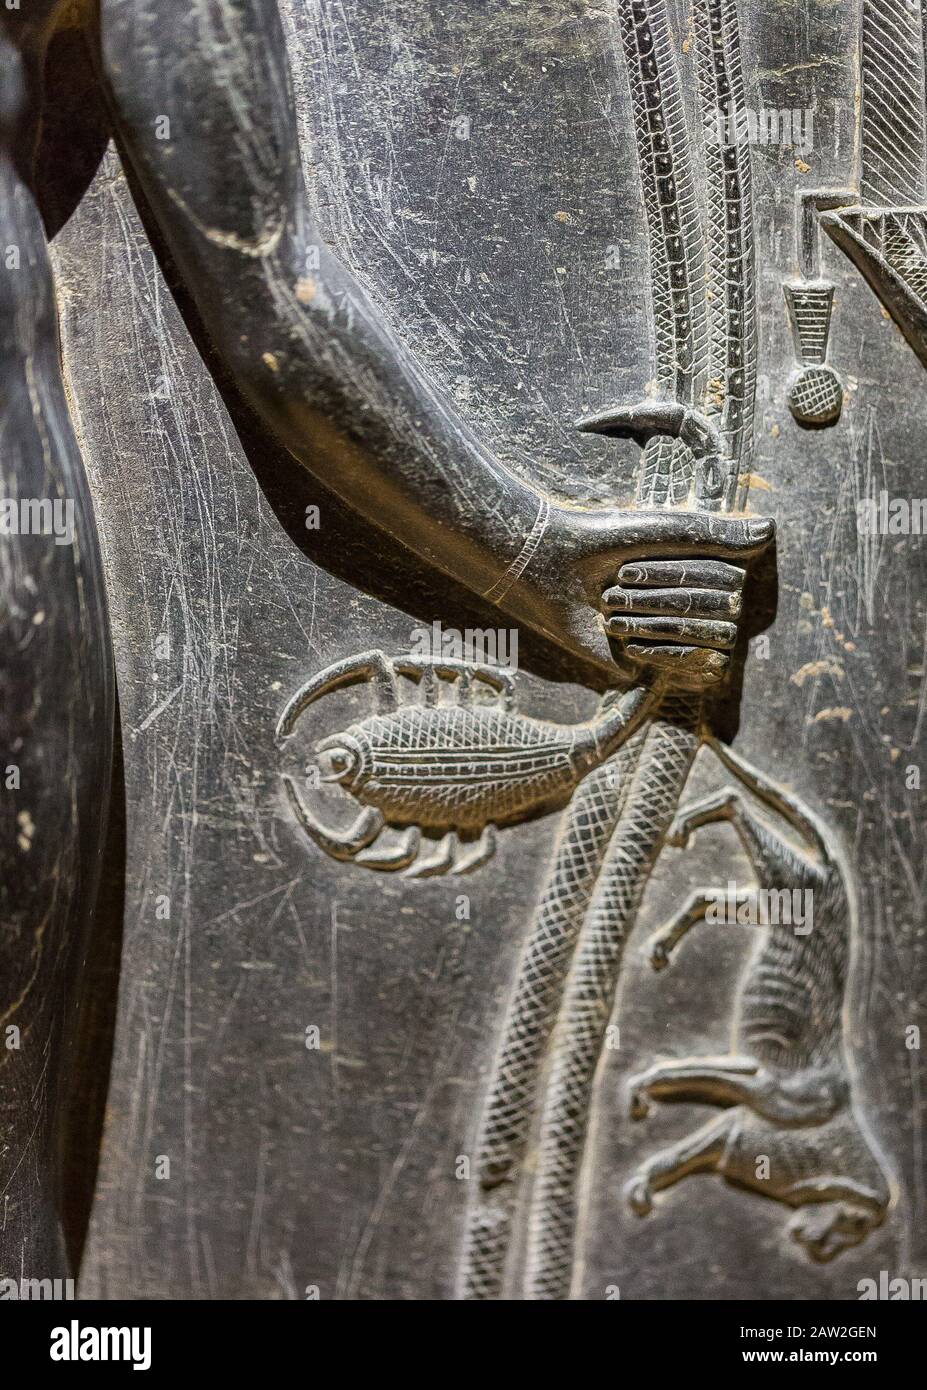 Foto scattata durante la visita di apertura della mostra "Osiris, i misteri sommersi dell'Egitto". Egitto, Cairo, Museo Egizio, dettaglio di una stela Horus. Foto Stock